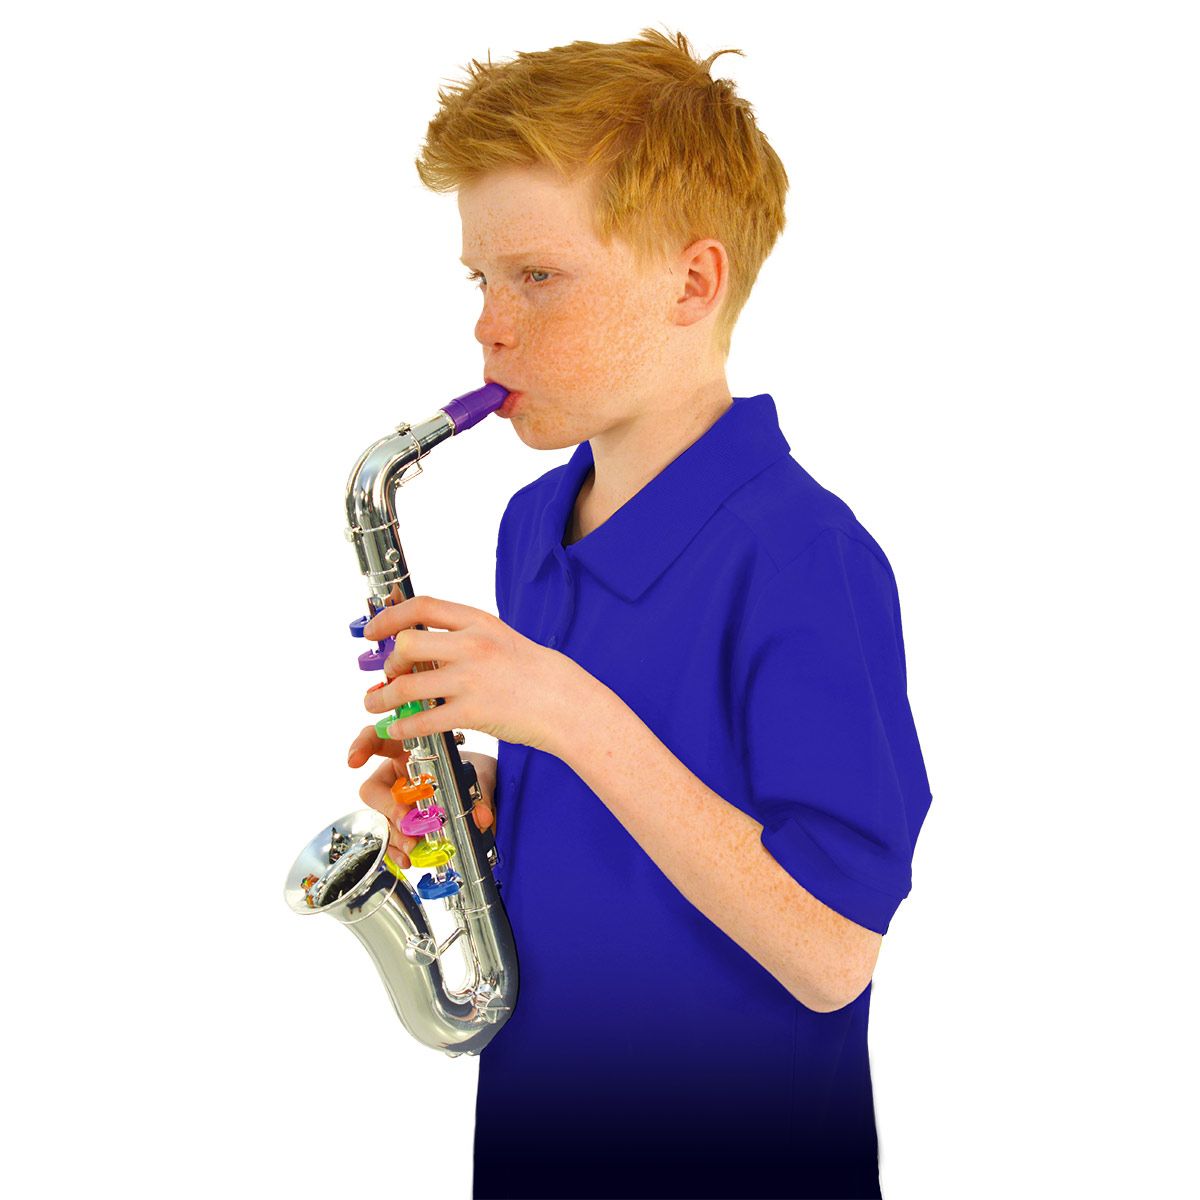 Blue-English Version 7 Boutons de Fonction Jouet de Saxophone pour Enfants Volume sûr à 5 Vitesses pour l'éducation précoce 01 Jouet d'instrument de Musique